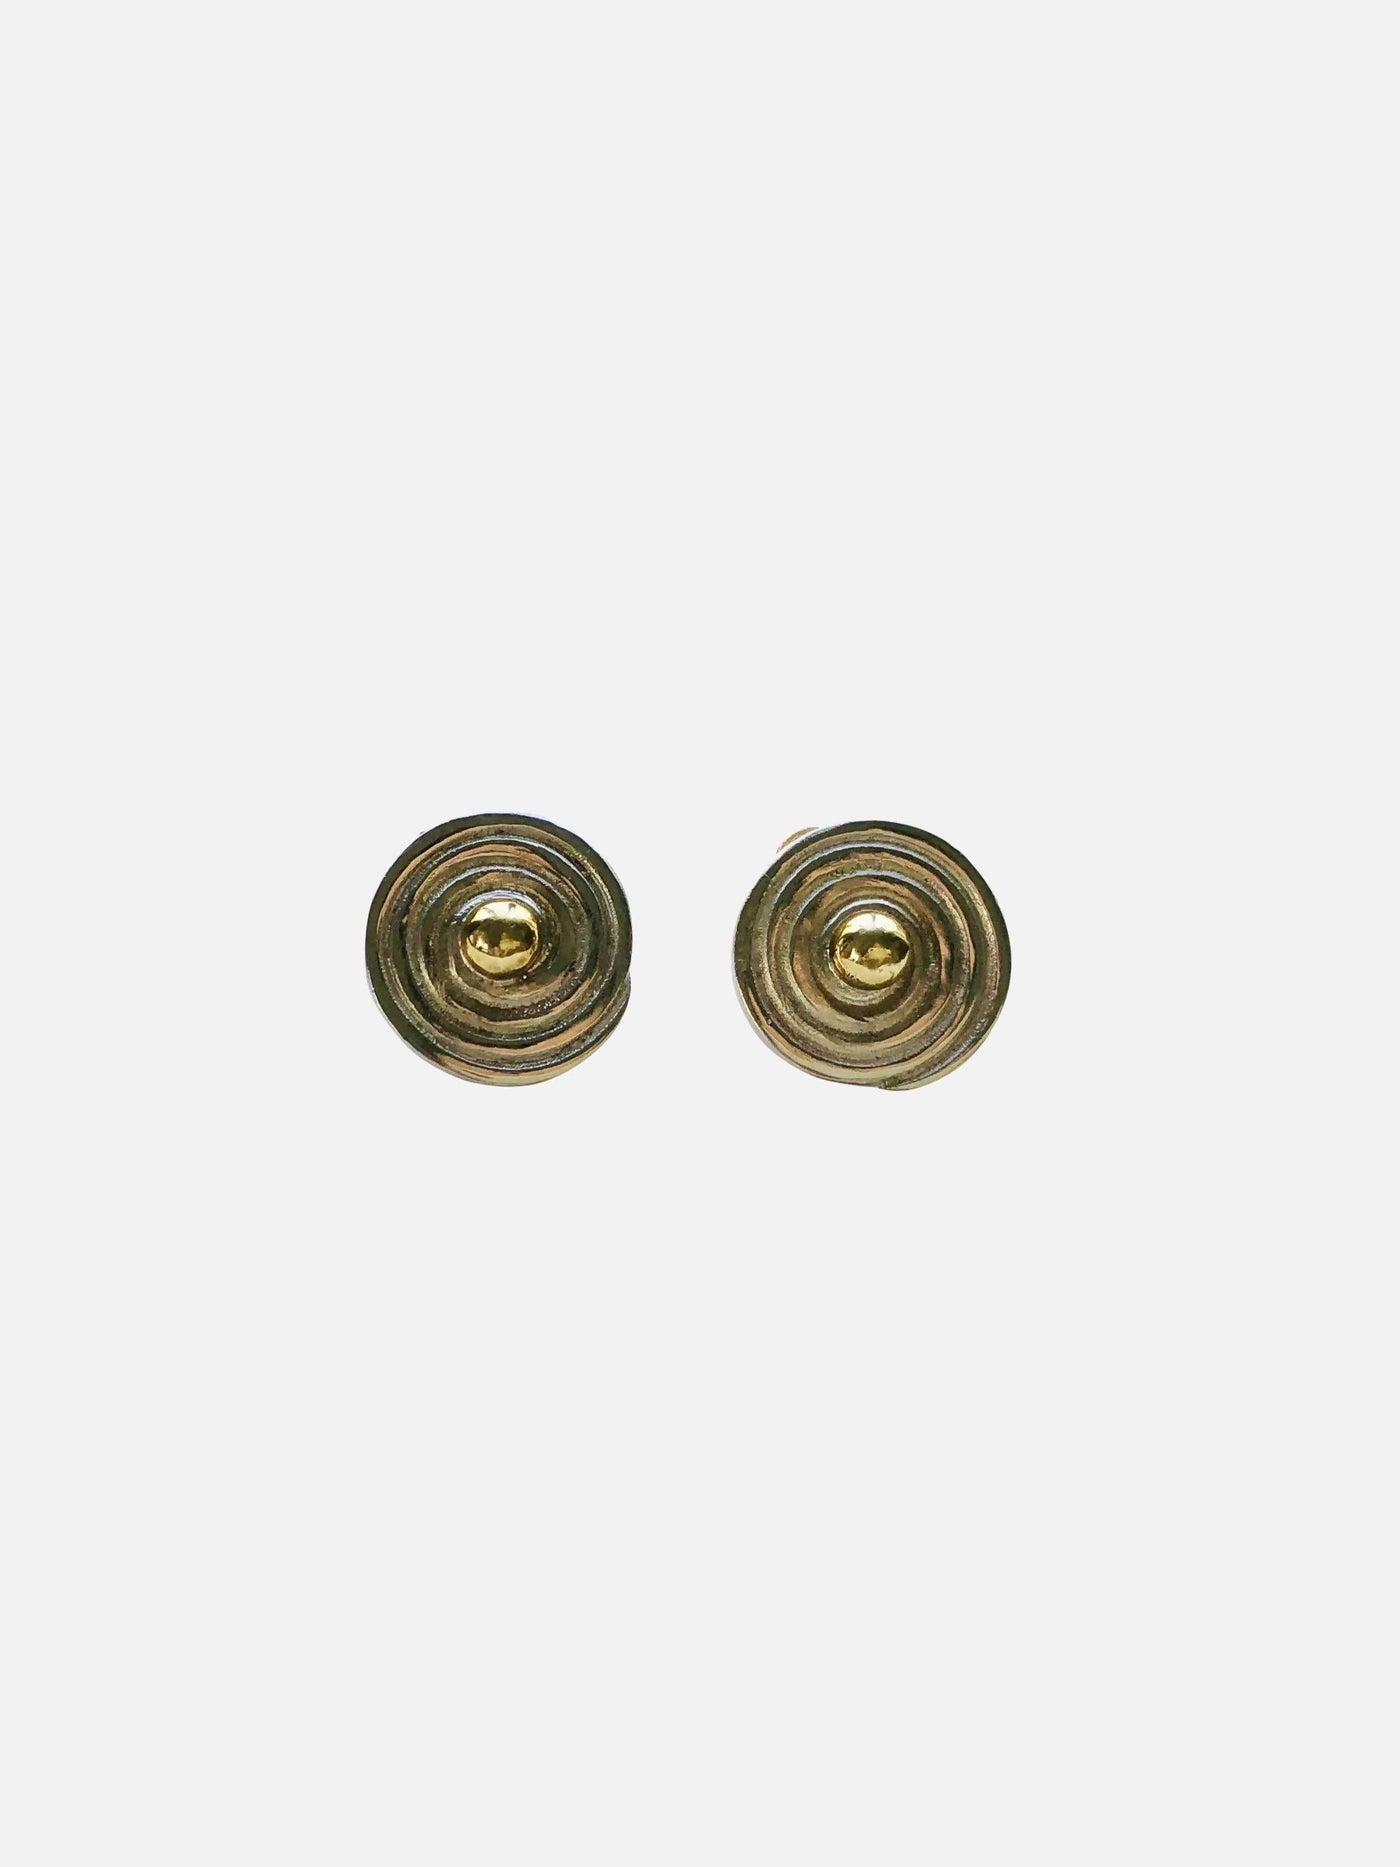 Boucles d'oreilles - Clou argent recyclé orné de bronze - Image 1